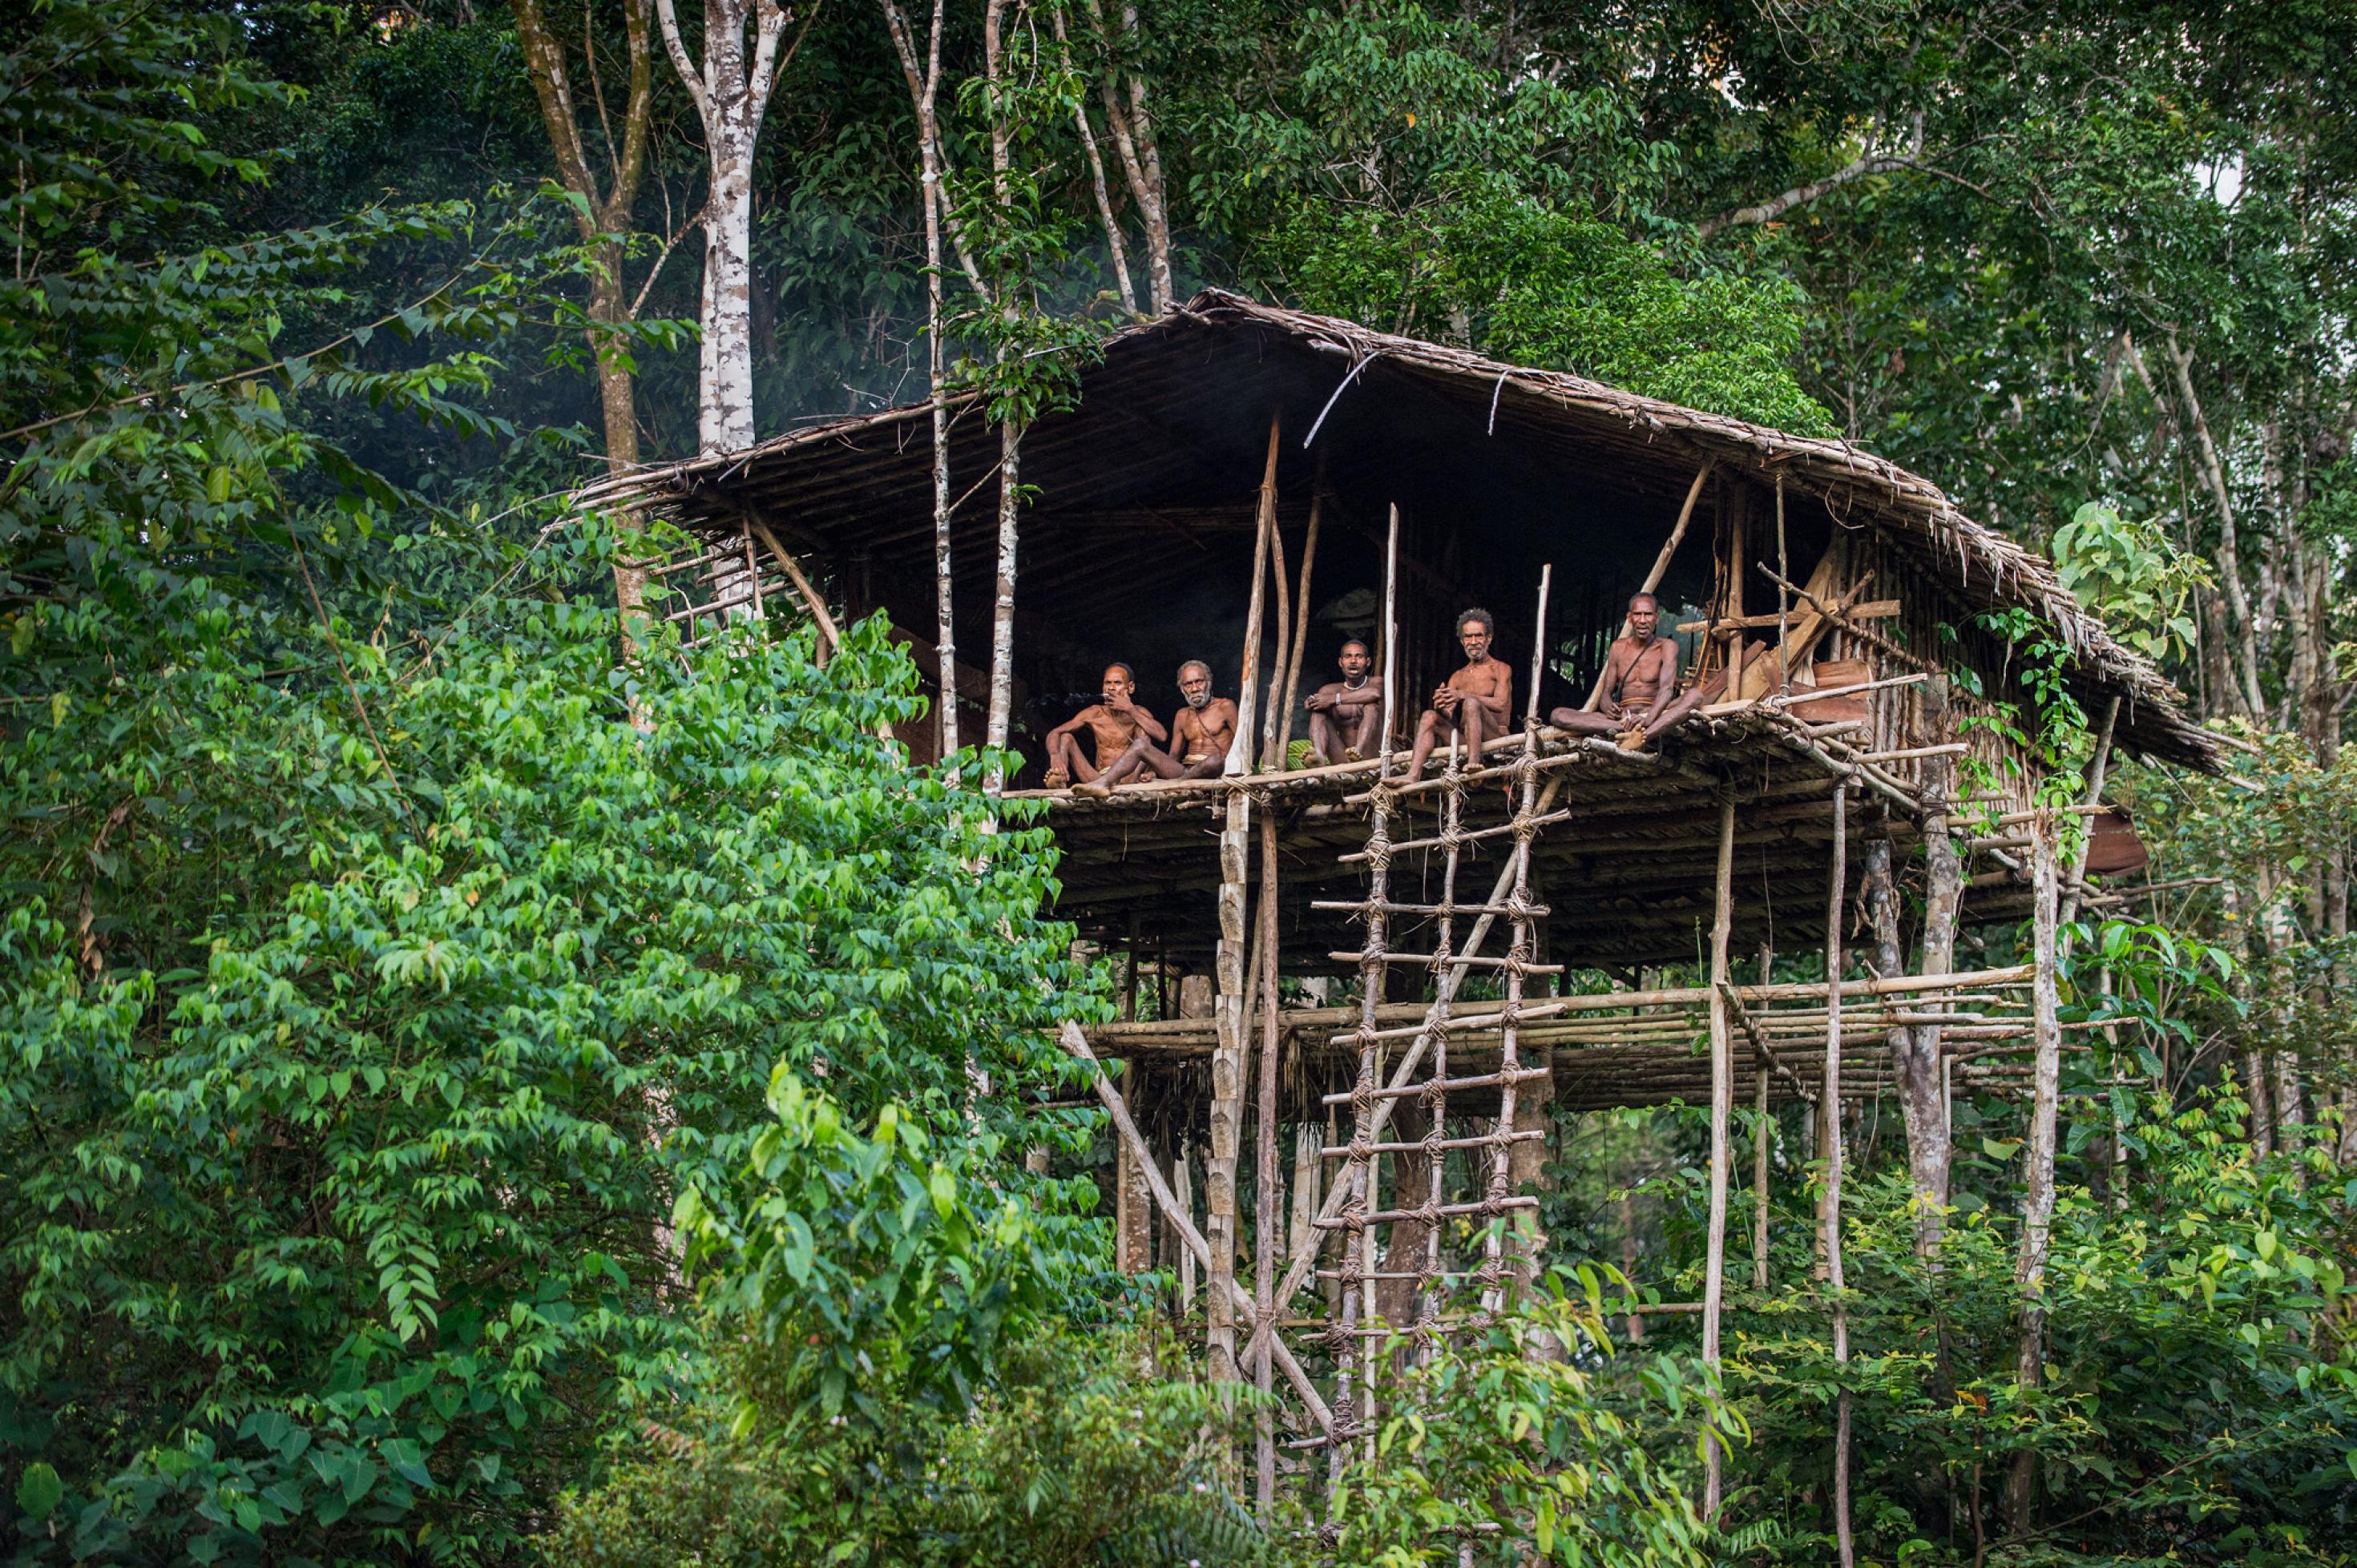 Zu sehen ist ein auf hohen Stelzen errichtetes Baumhaus im Regenwald Neuguineas, auf dessen Plattform hoch oben Menschen sitzen und auf den Fotografen blicken. Es sind Angehörige des Volkes der Korowai.